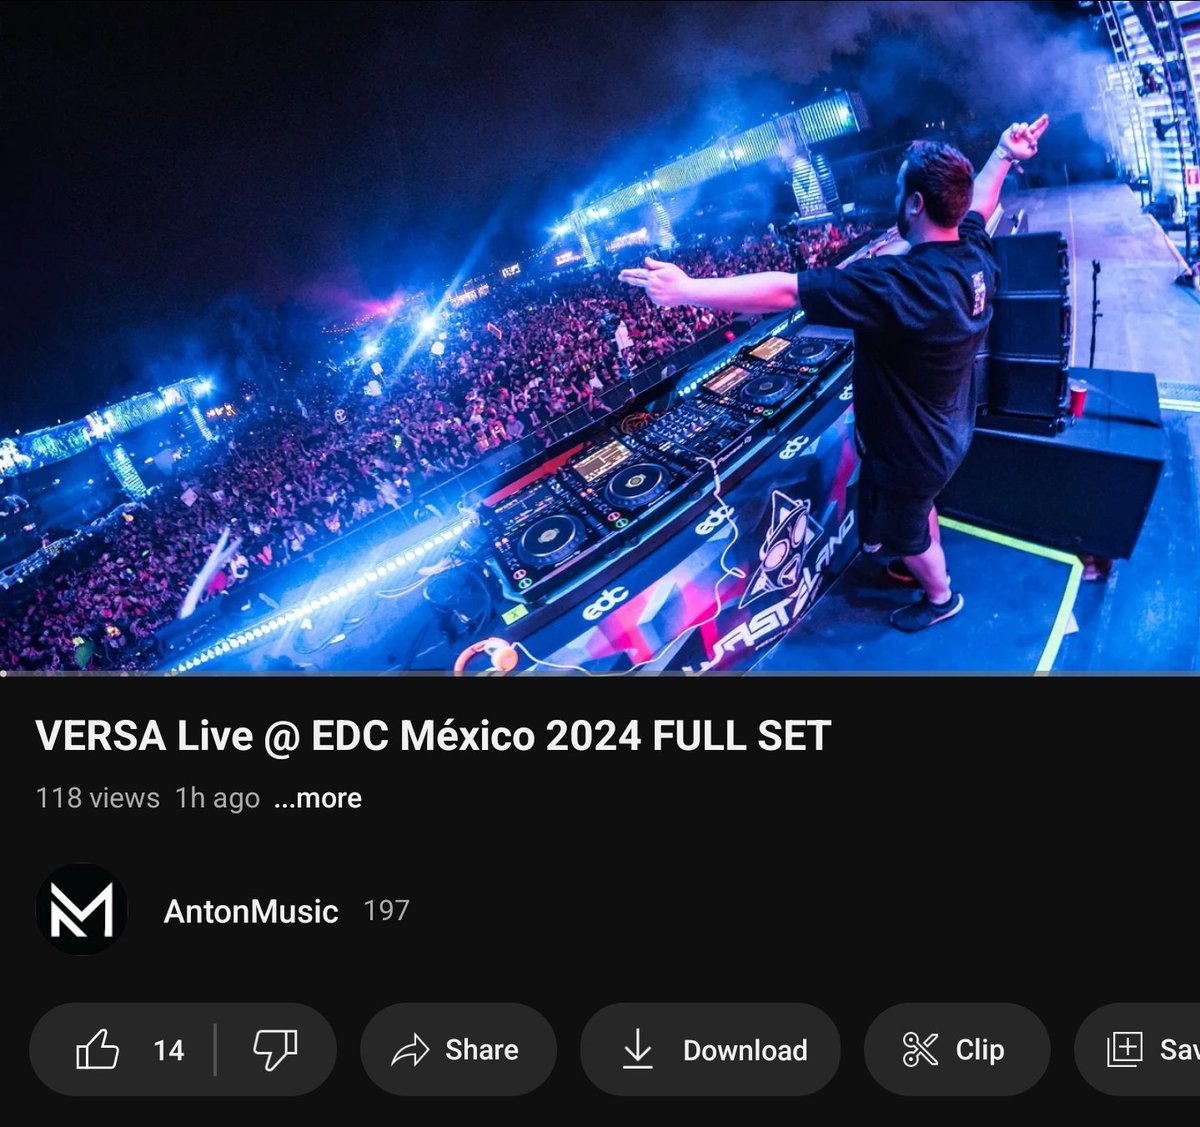 VERSA live @ EDC México 2024 FULL SET 
Out now on YouTube
@versadubz 🧡